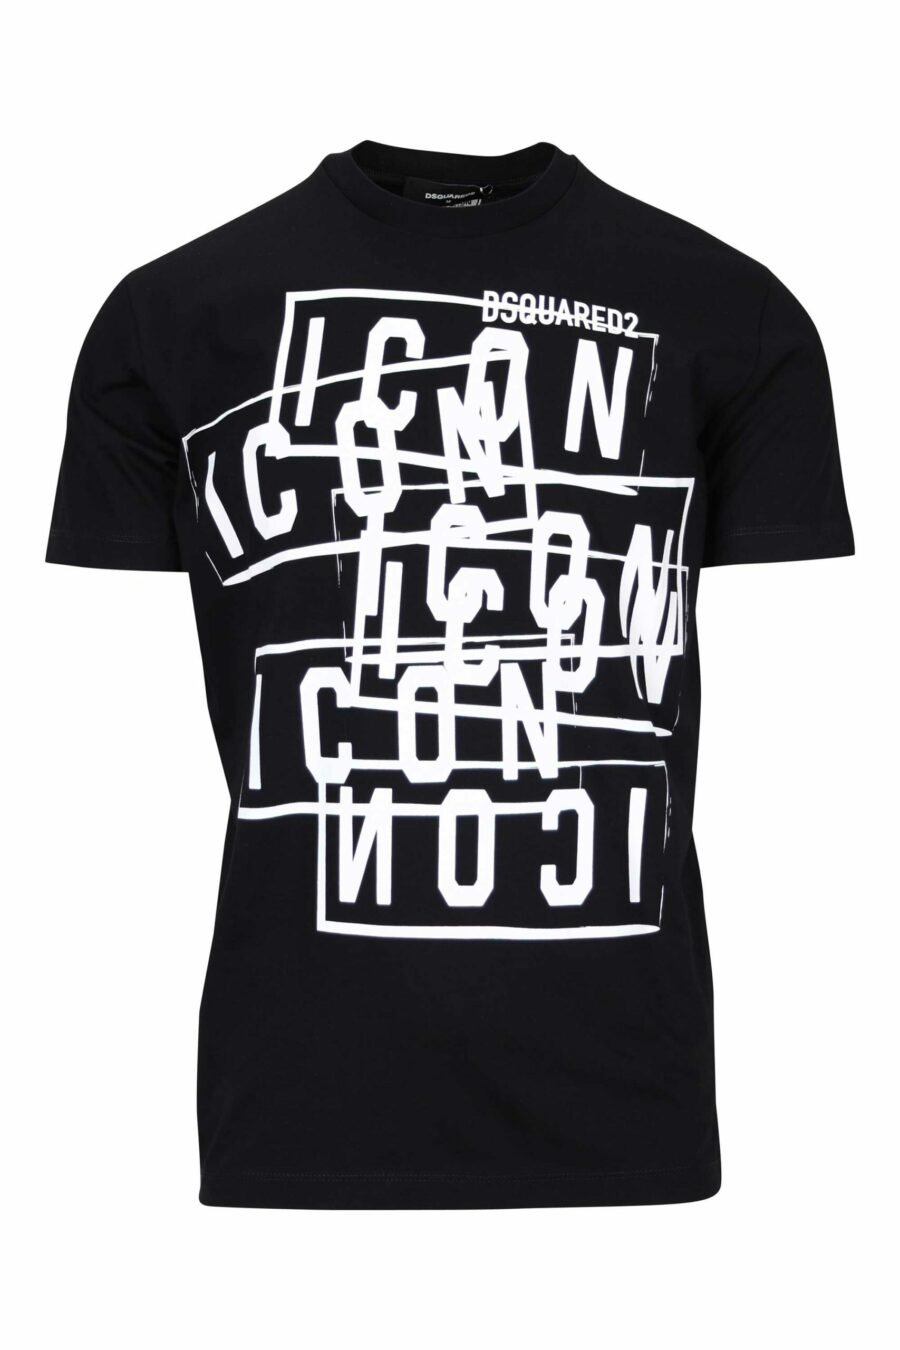 T-shirt preta com carimbos do logótipo "icon" - 8054148362744 à escala